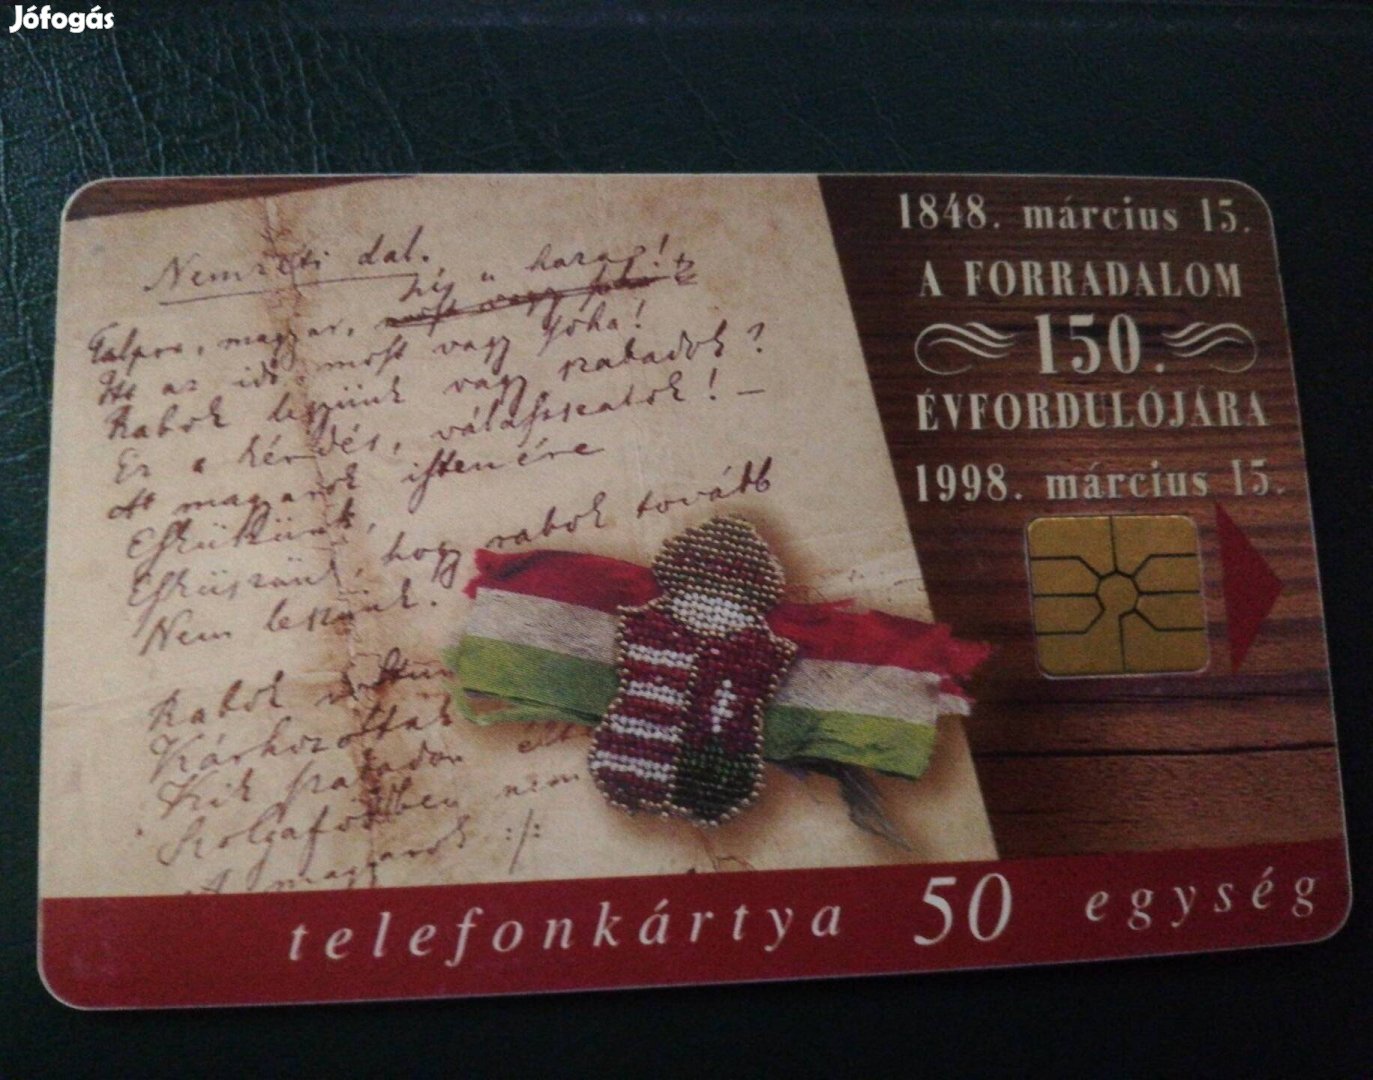 A szabadságharc 150 évfordulójára (1998) telefononkártya